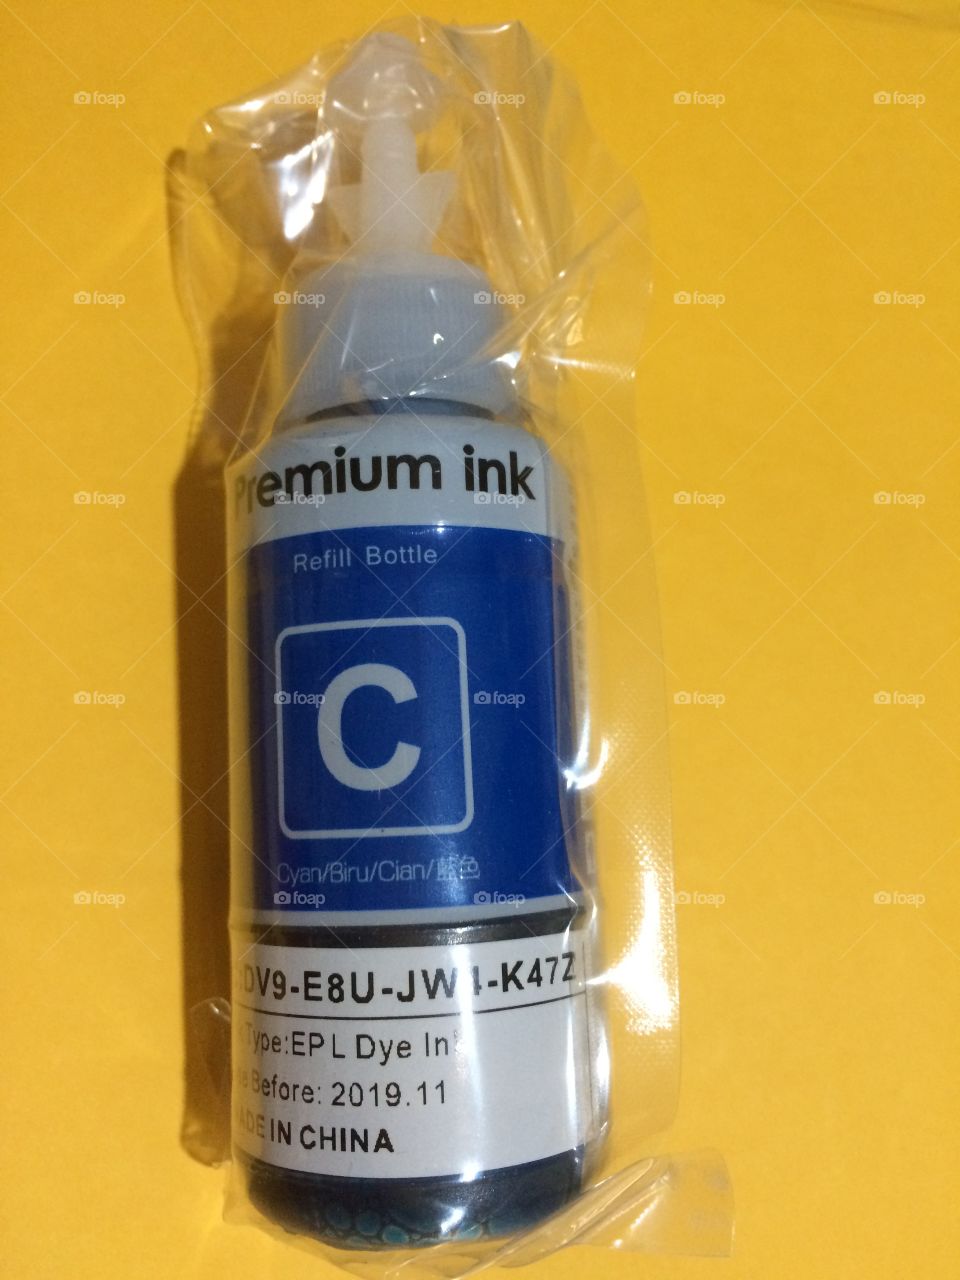 Premium ink